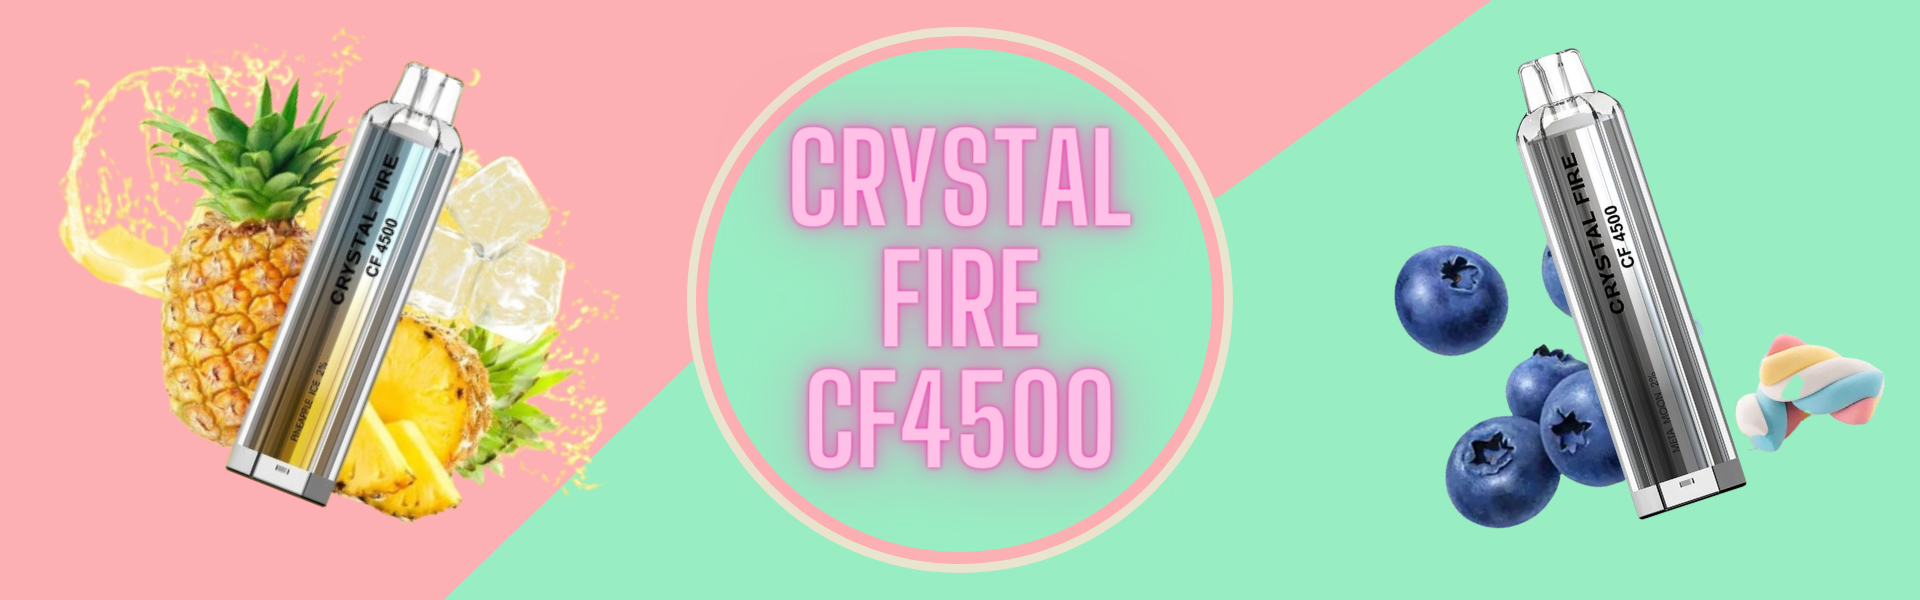 CRYSTAL FIRE CF4500 vapes in London Vapes Online bargains sale